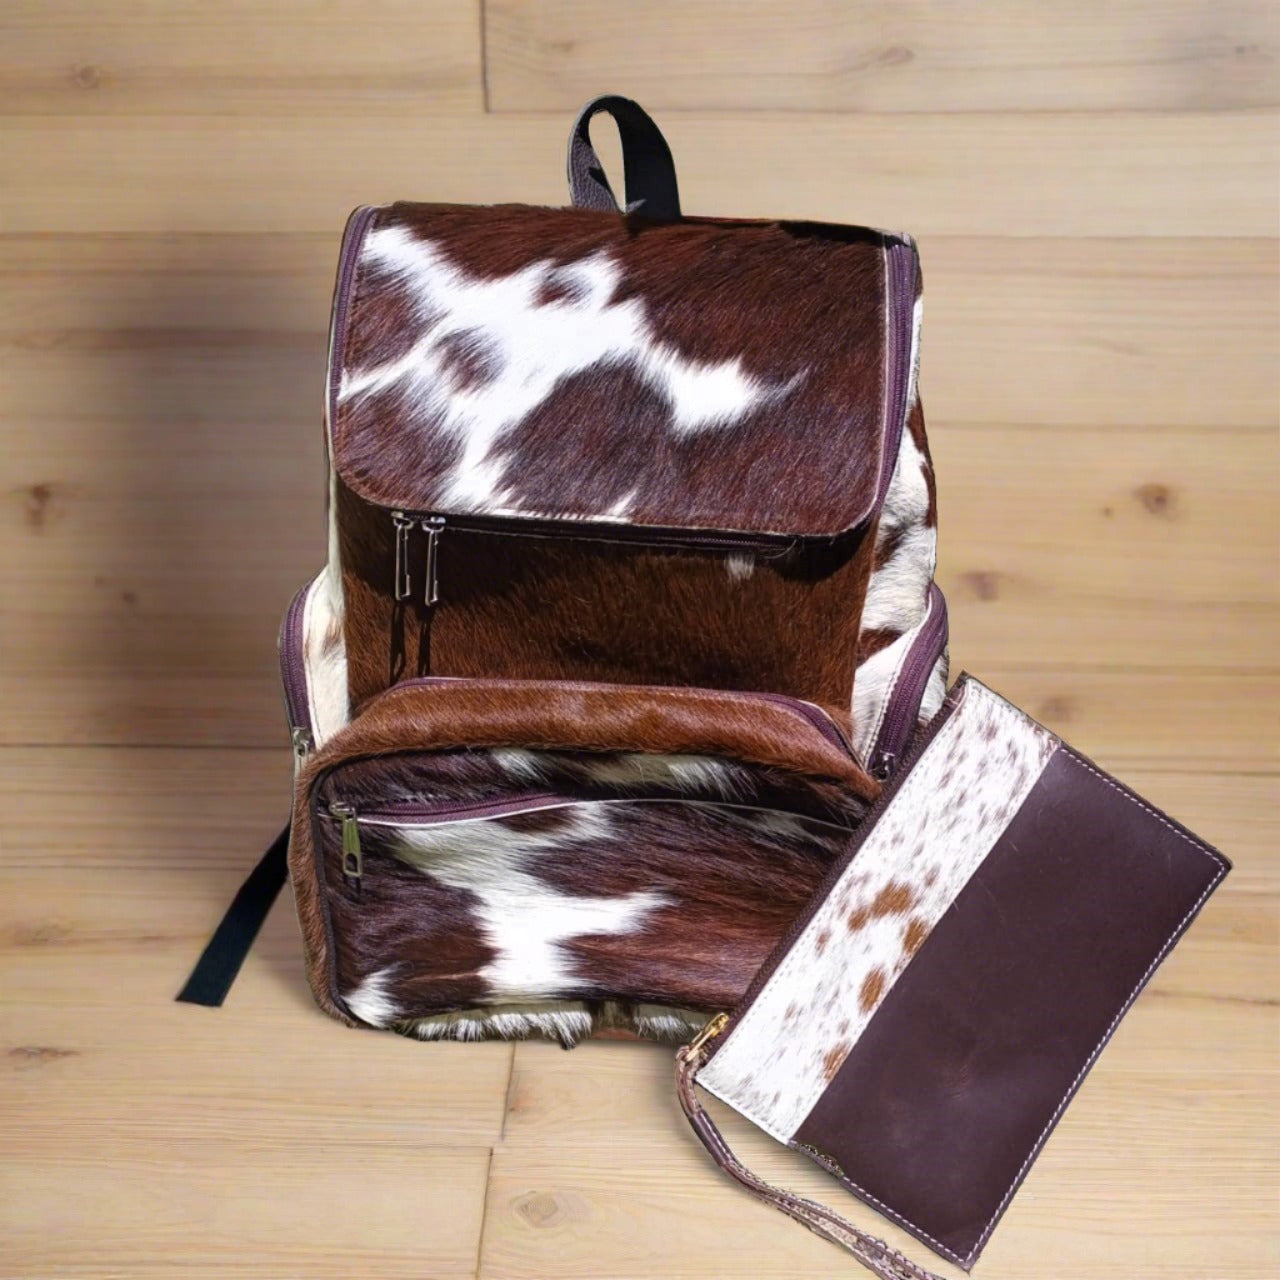 brwon backpack diaper backpack leatehr bag backpack cowhide leather bag genuine leather backpack laptop backpack trvale backpack 